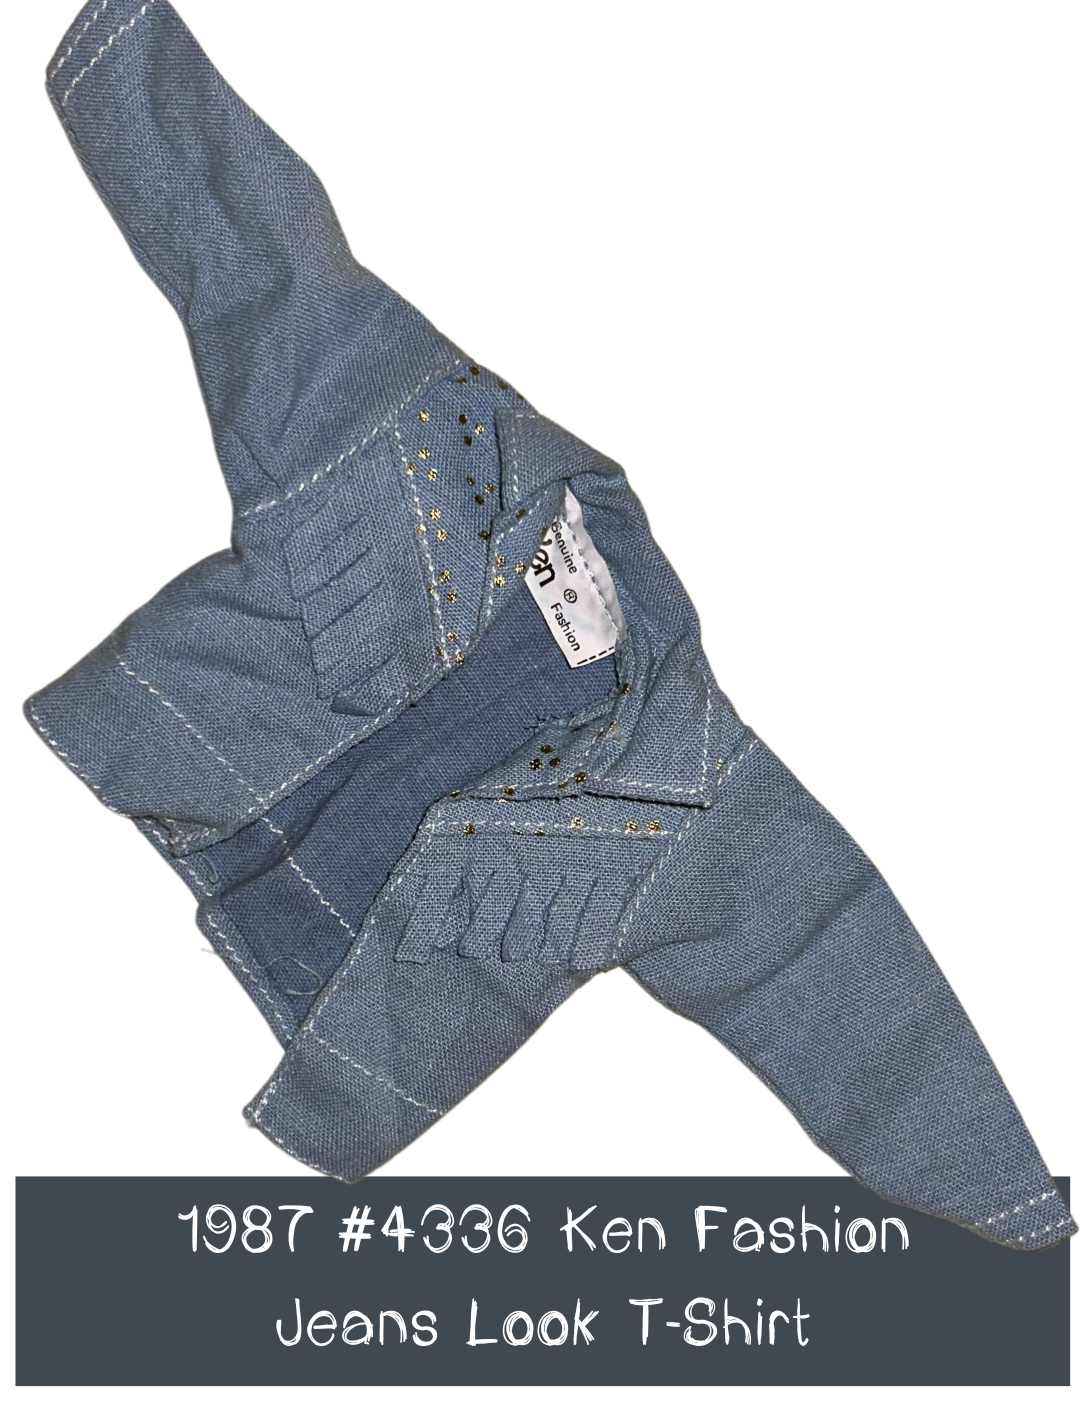 1987 Ken Fashion #4336 Jeans Look Jacket